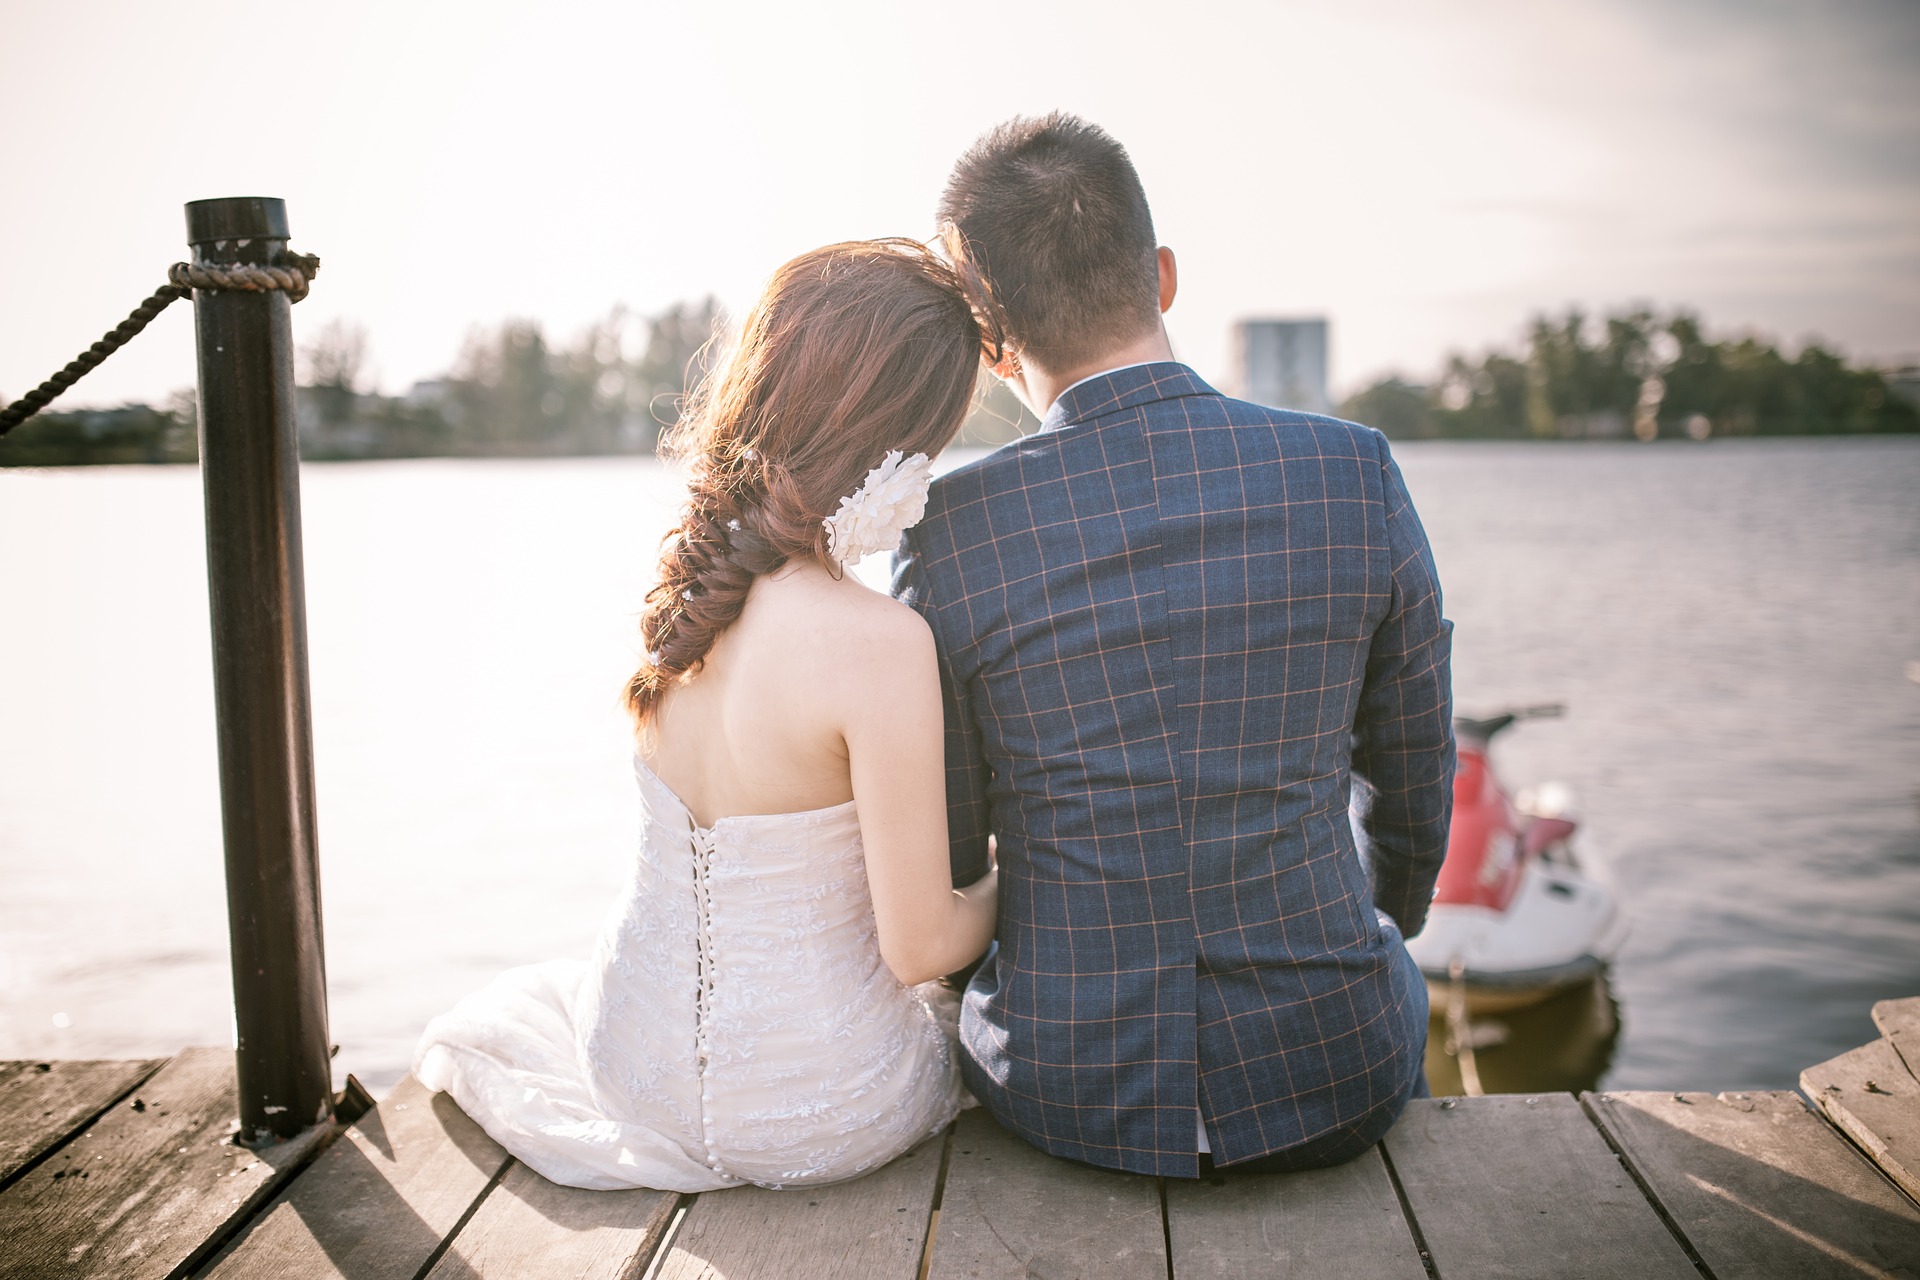 coppia in viaggio di nozze, seduta sul ciglio di un lago mentre ammira l'orizzonte.